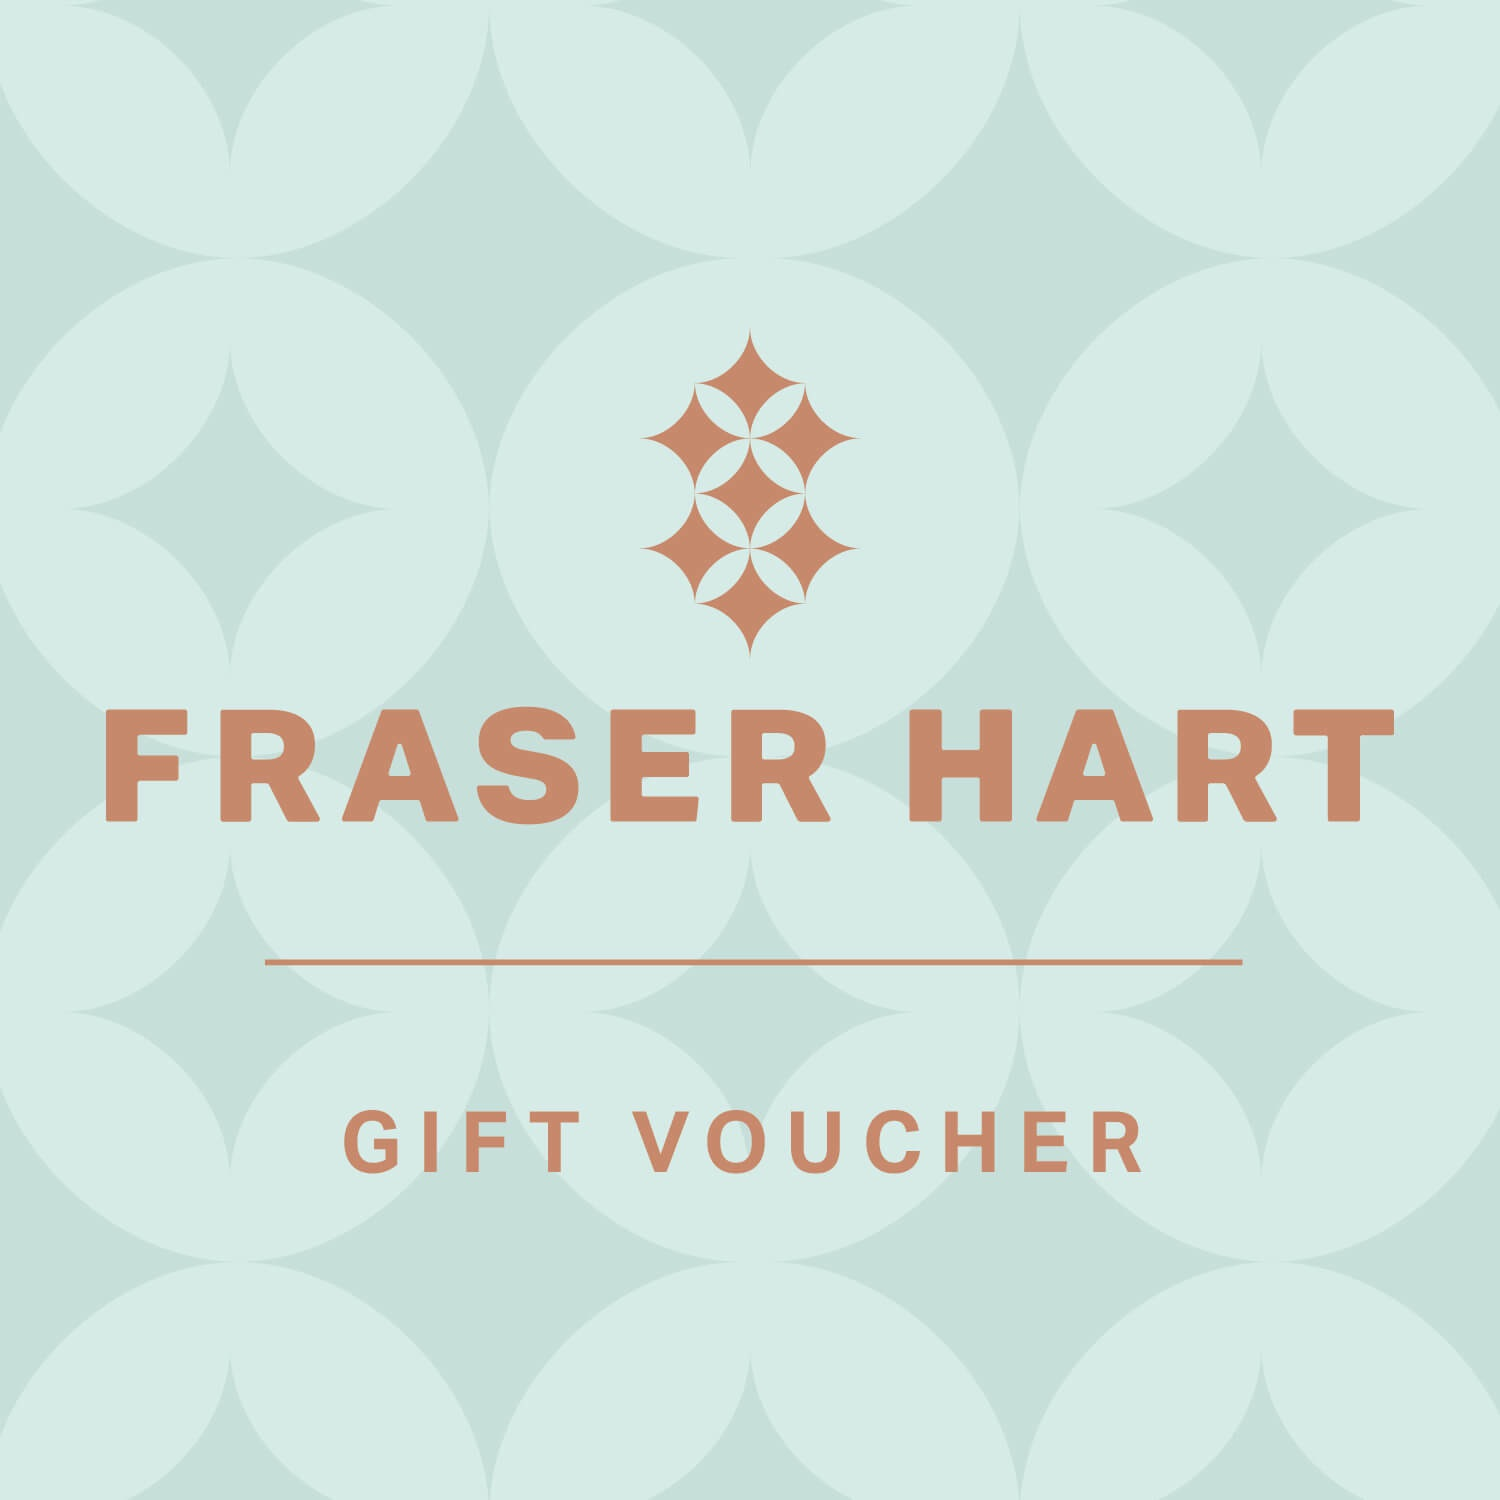 Fraser Hart Gift Voucher